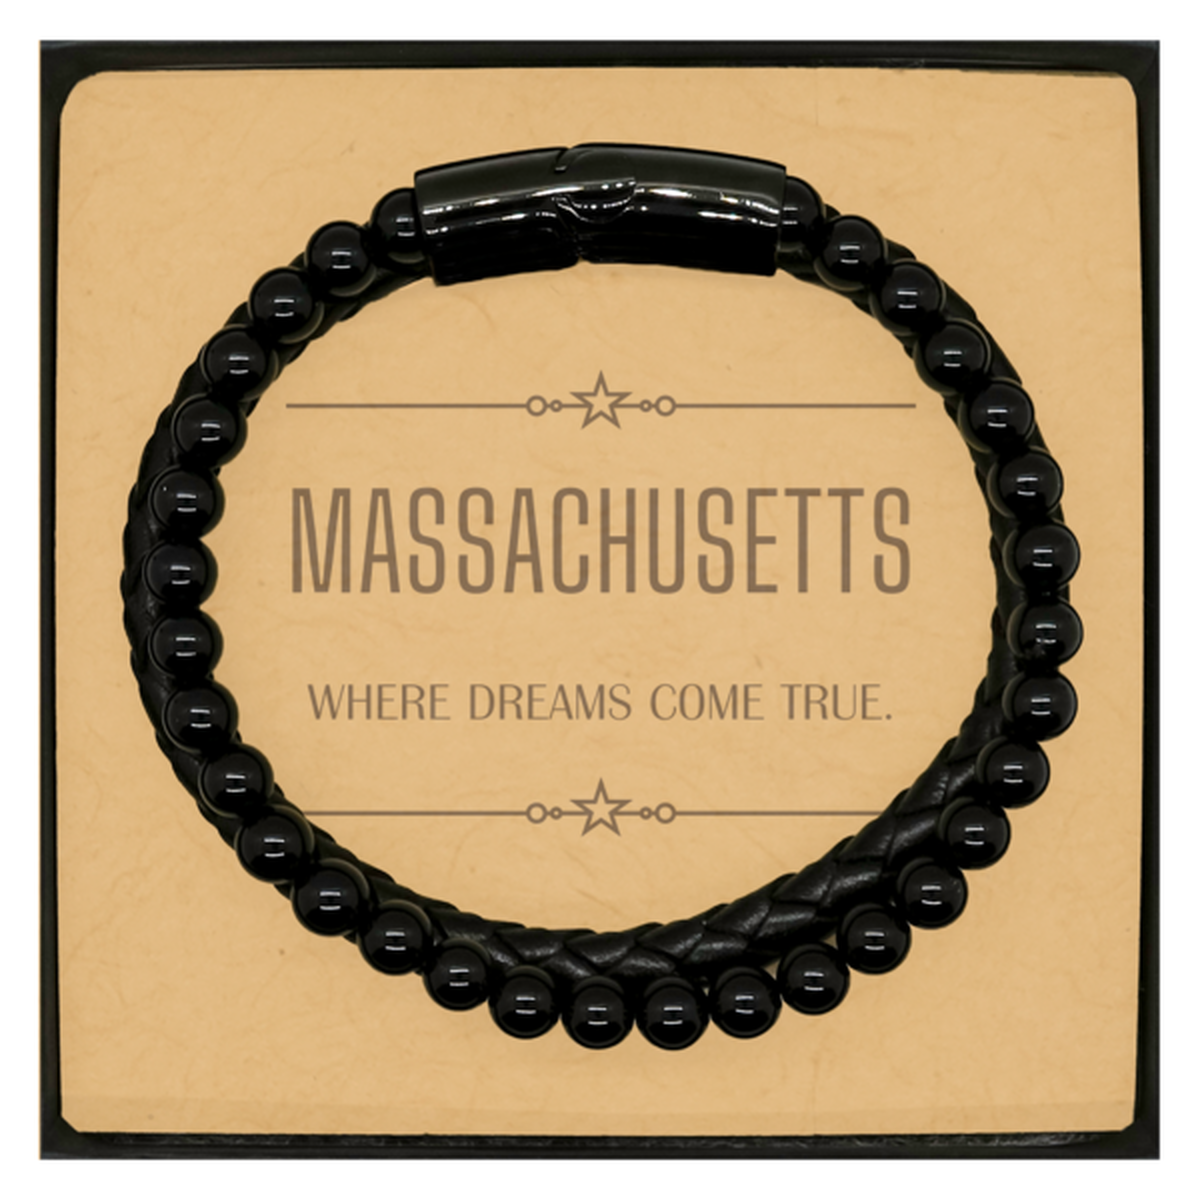 Love Massachusetts State Stone Leather Bracelets, Massachusetts Where dreams come true, Birthday Christmas Inspirational Gifts For Massachusetts Men, Women, Friends